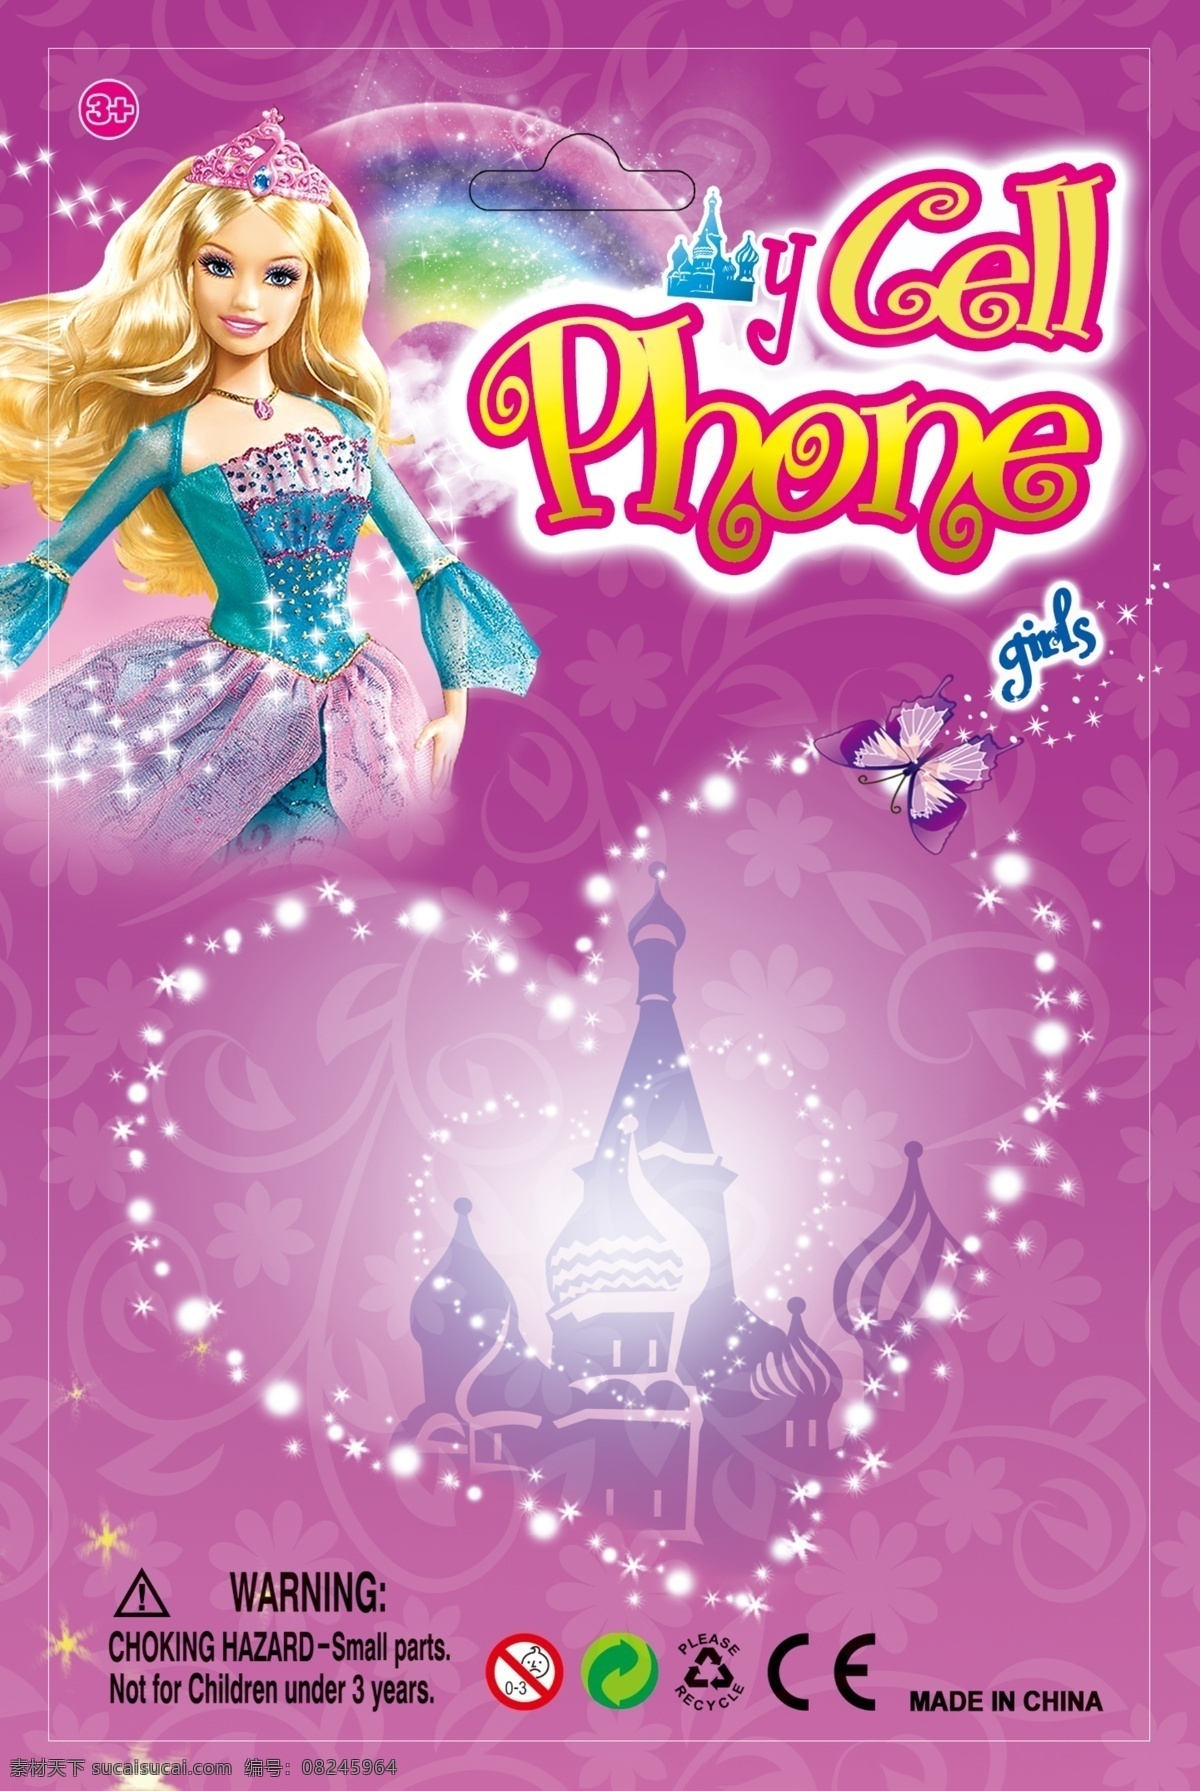 芭比玩具包装 玩具手机包装 芭比公主 城堡 彩虹 蝴蝶 花纹 心 星 包装设计 广告设计模板 源文件